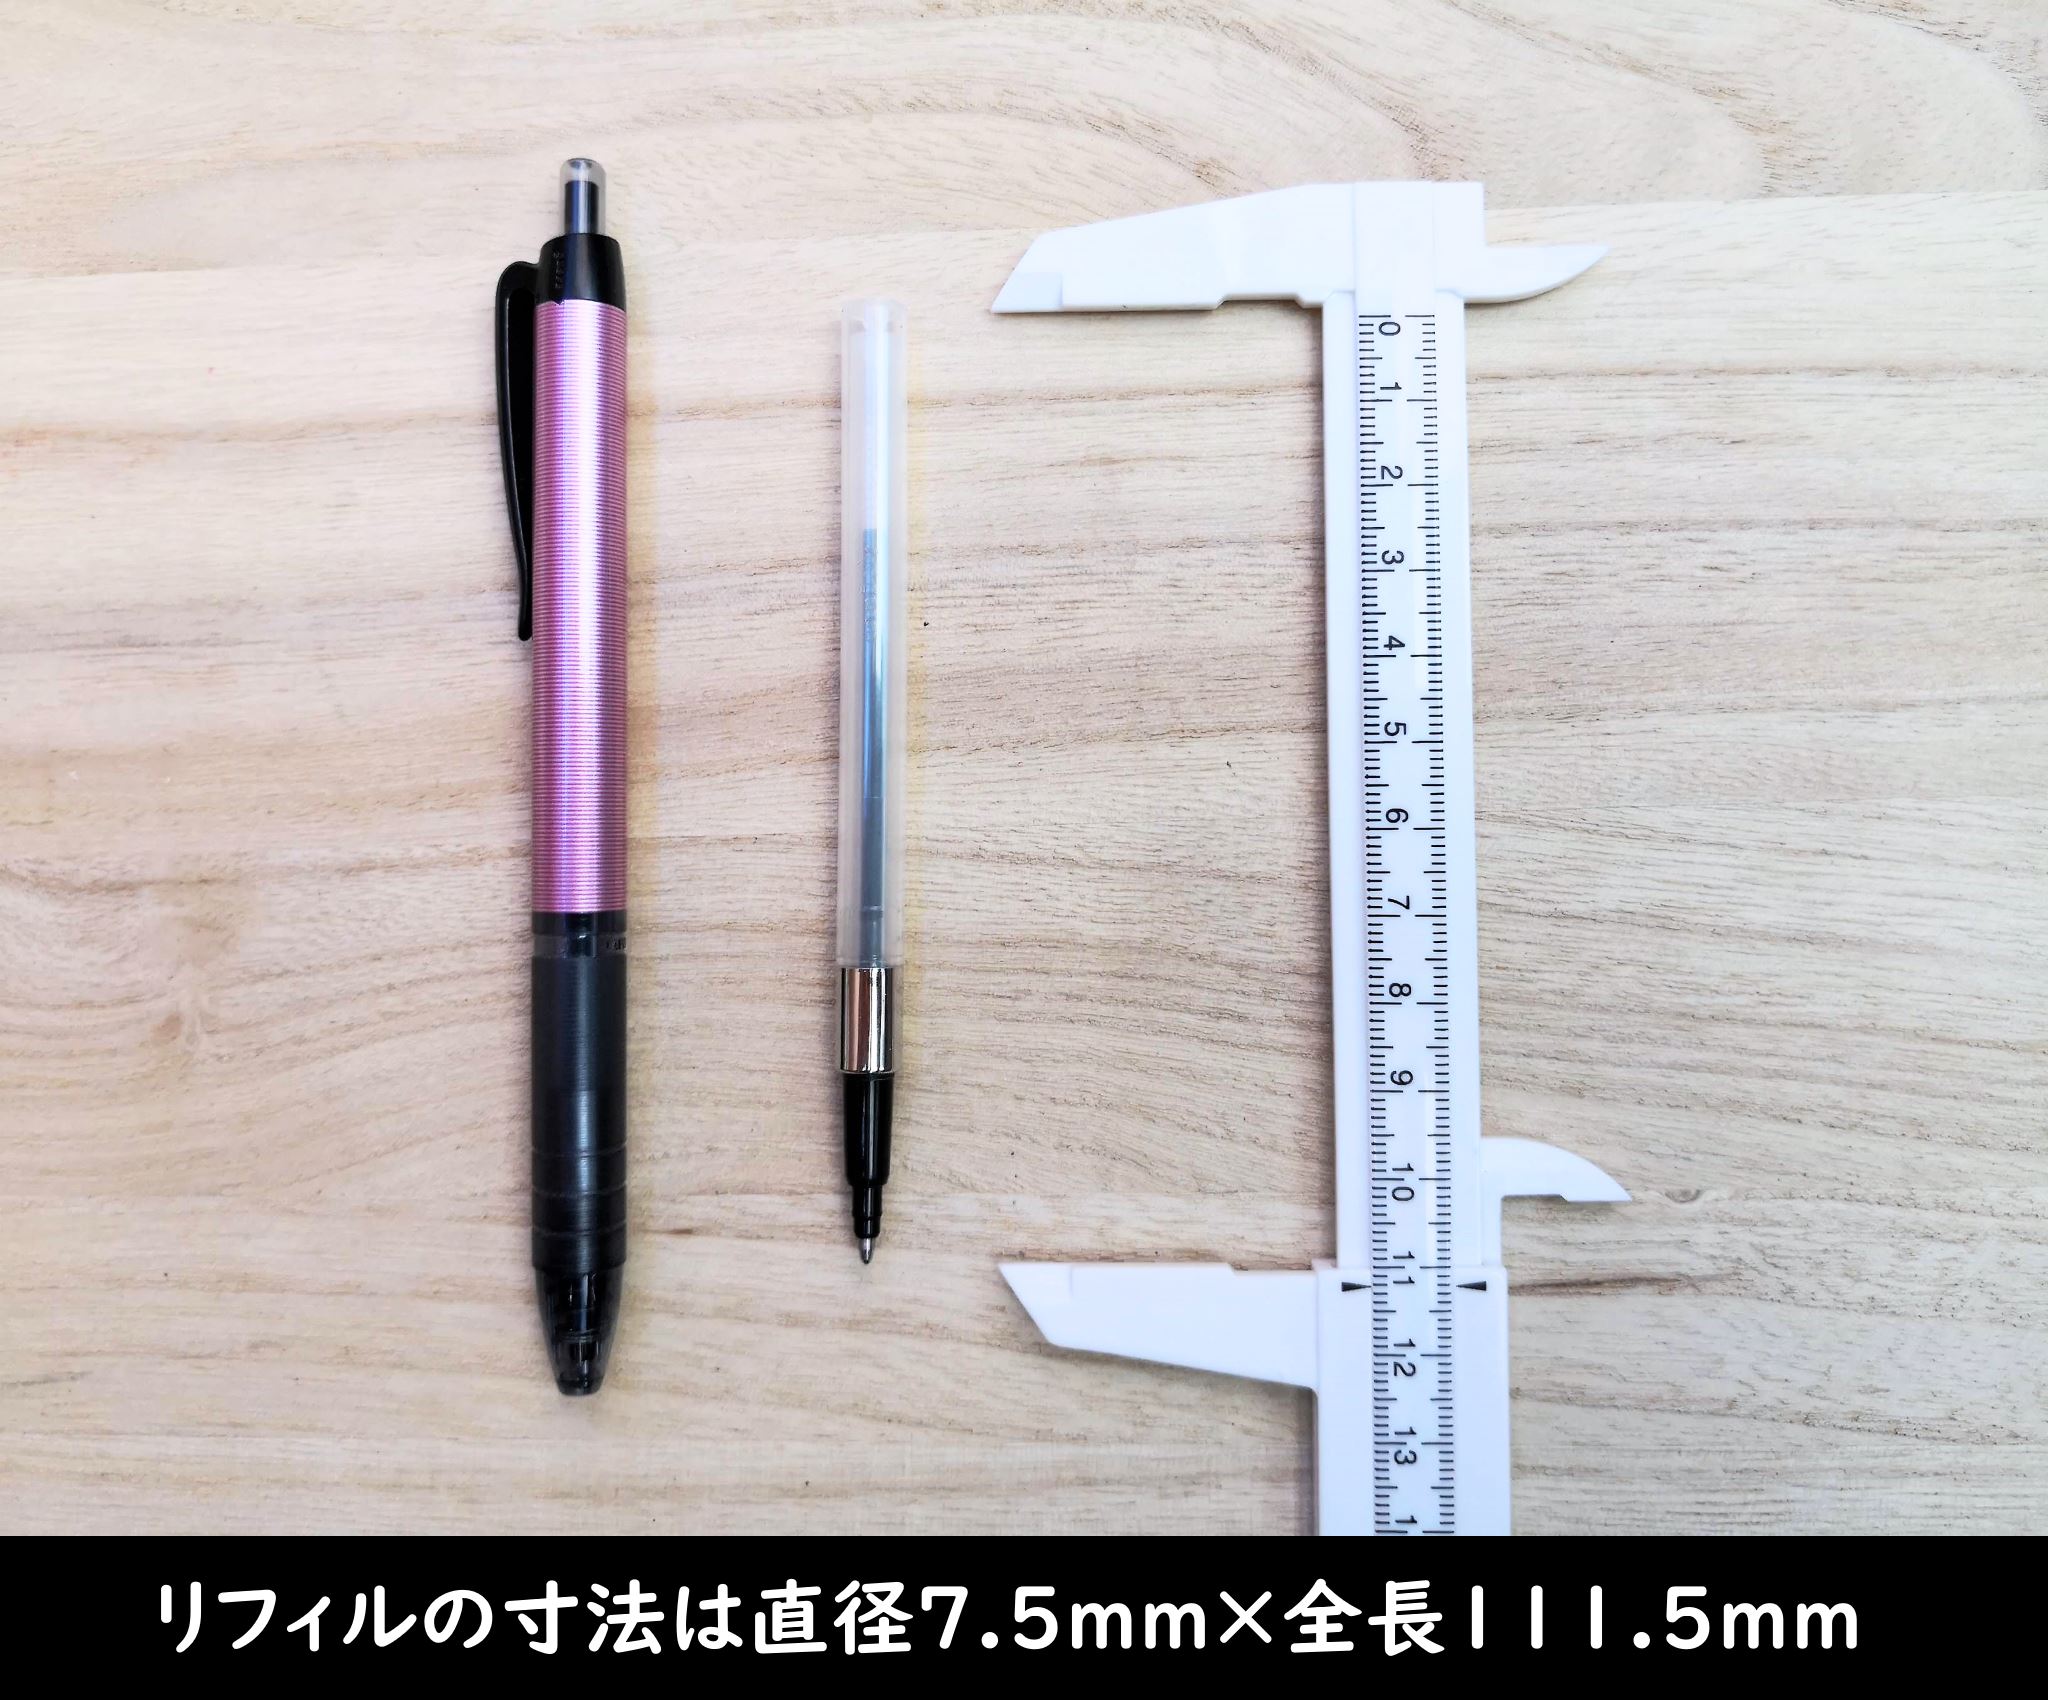 リフィルの寸法は直径7.5mm×全長111.5mm